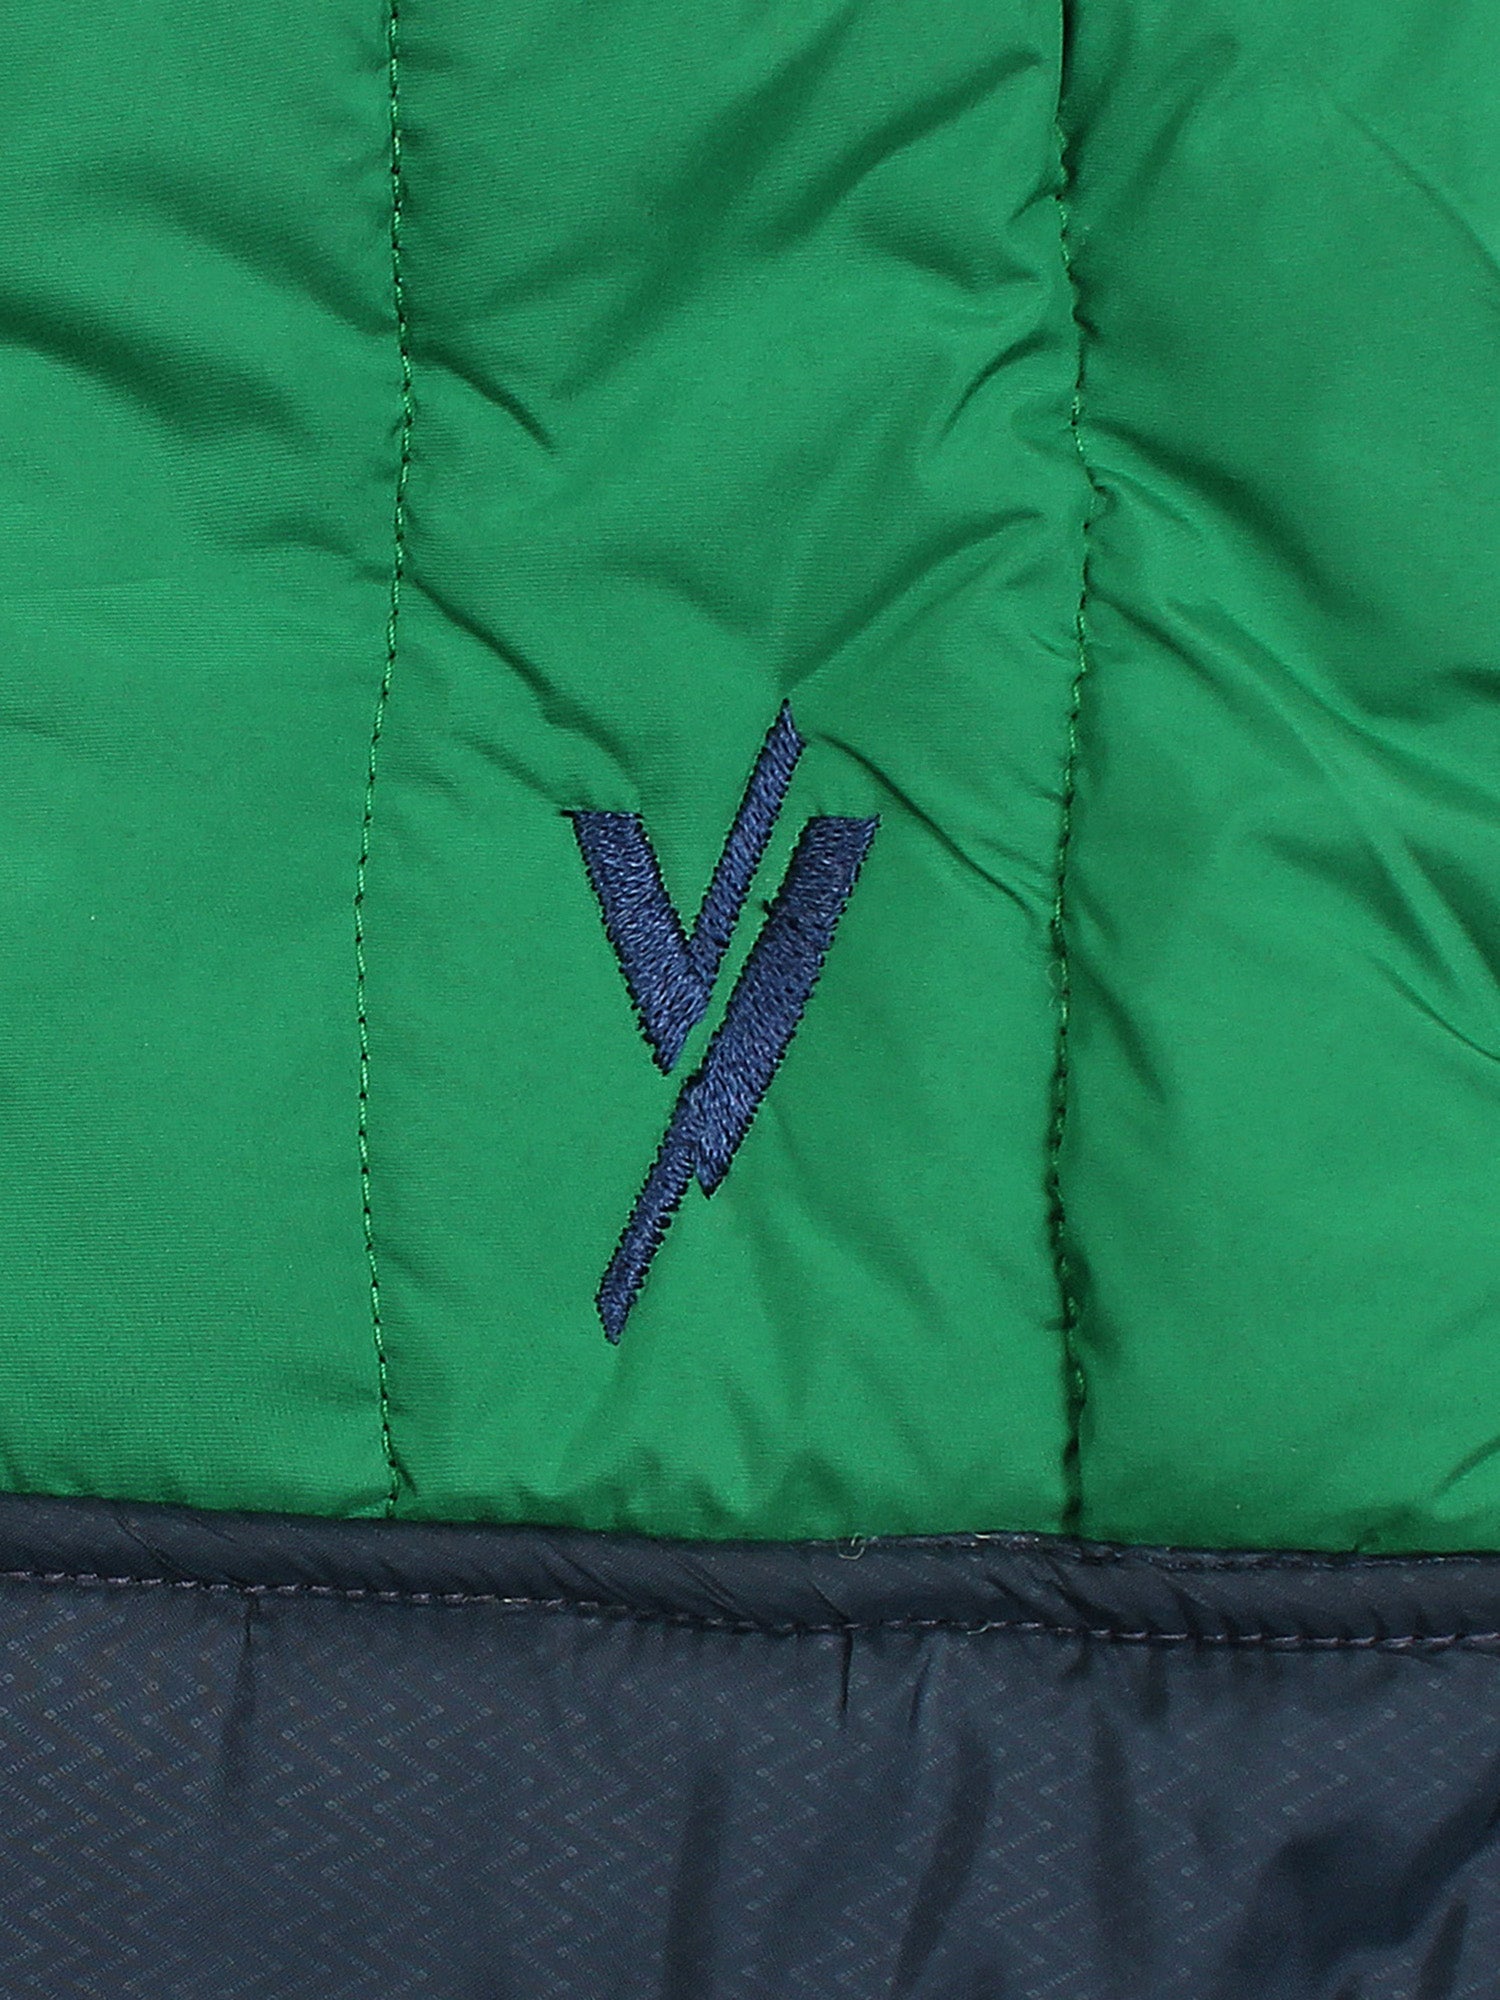 Sleeveless Hooded Puffer For Boys & Girls VJ06-C Green/Navy Blue